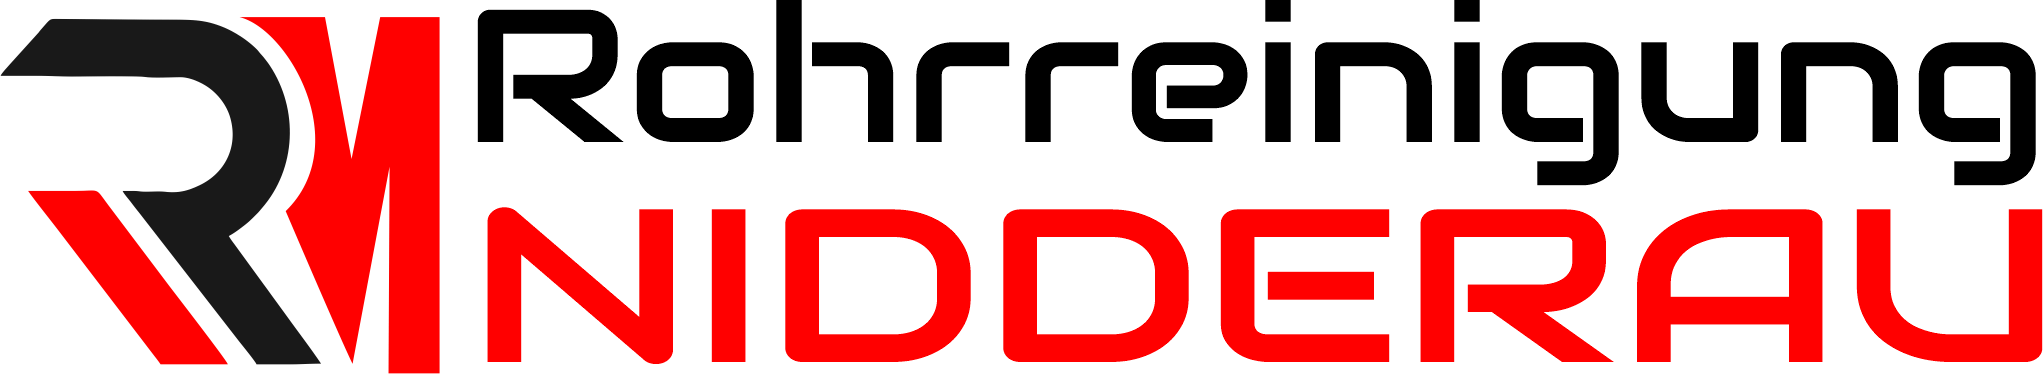 Rohrreinigung Nidderau Logo